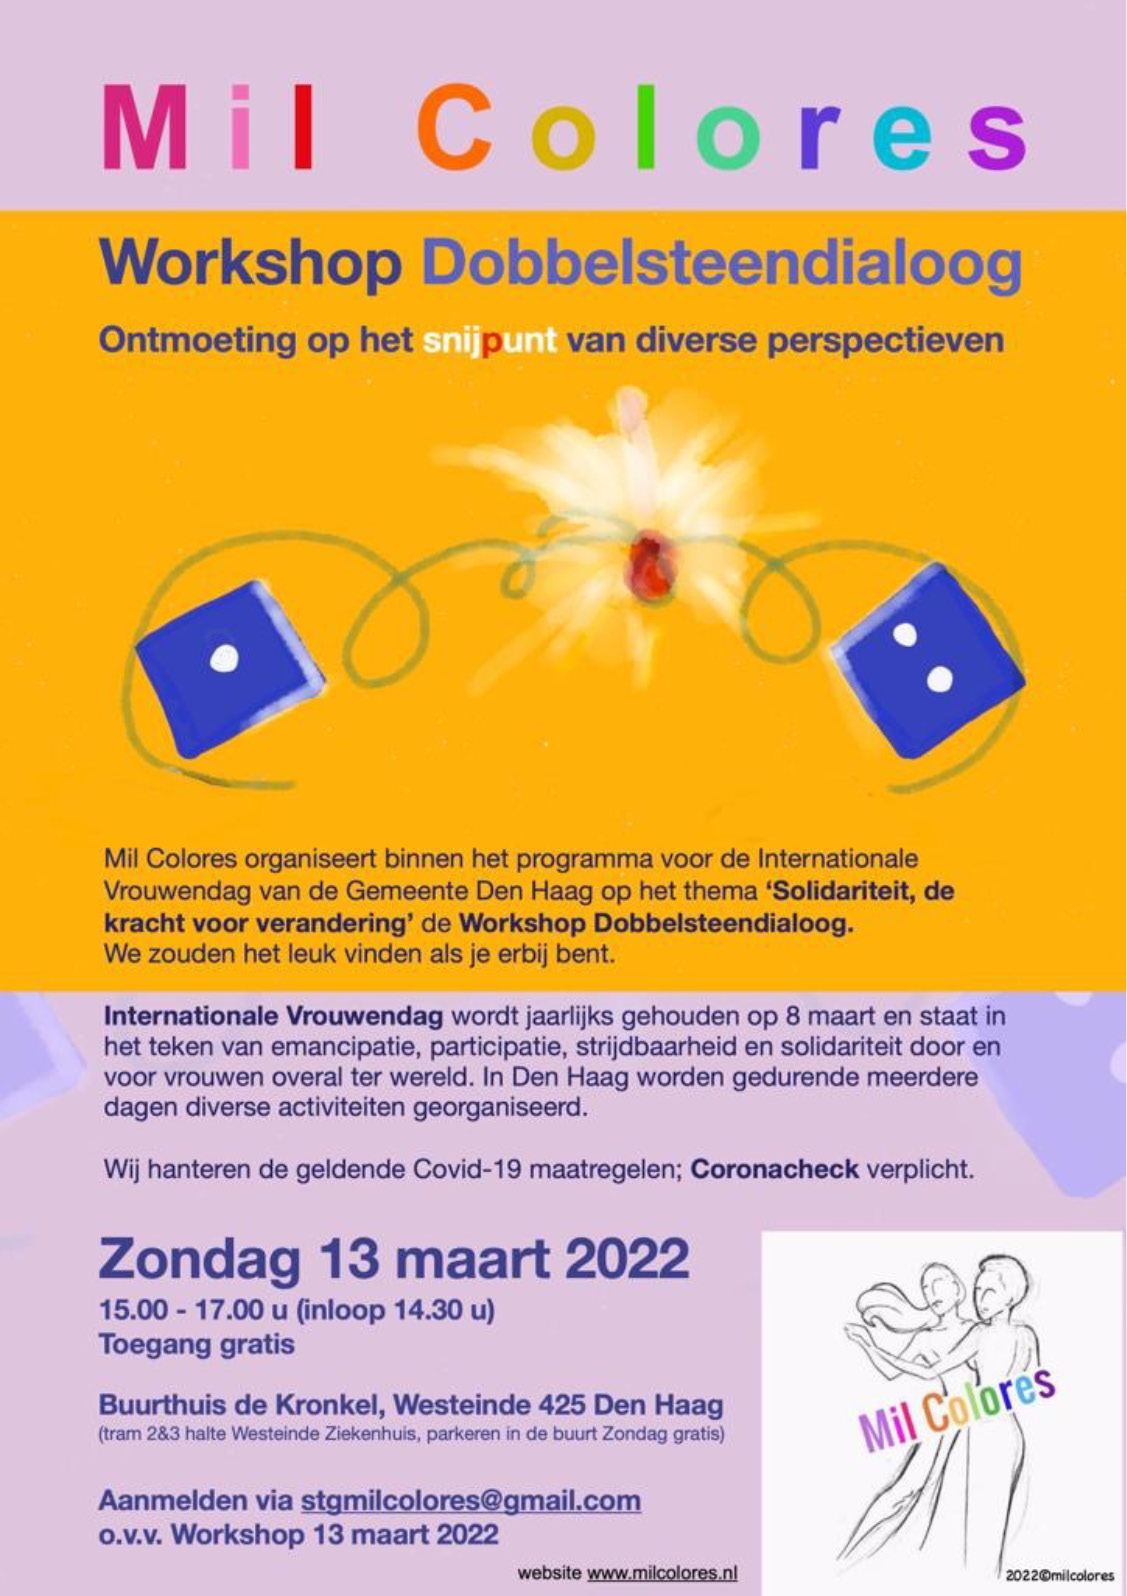 Flyer Mil Colores workshop Dobbelsteendialoog op zondag 13 maart 2022.